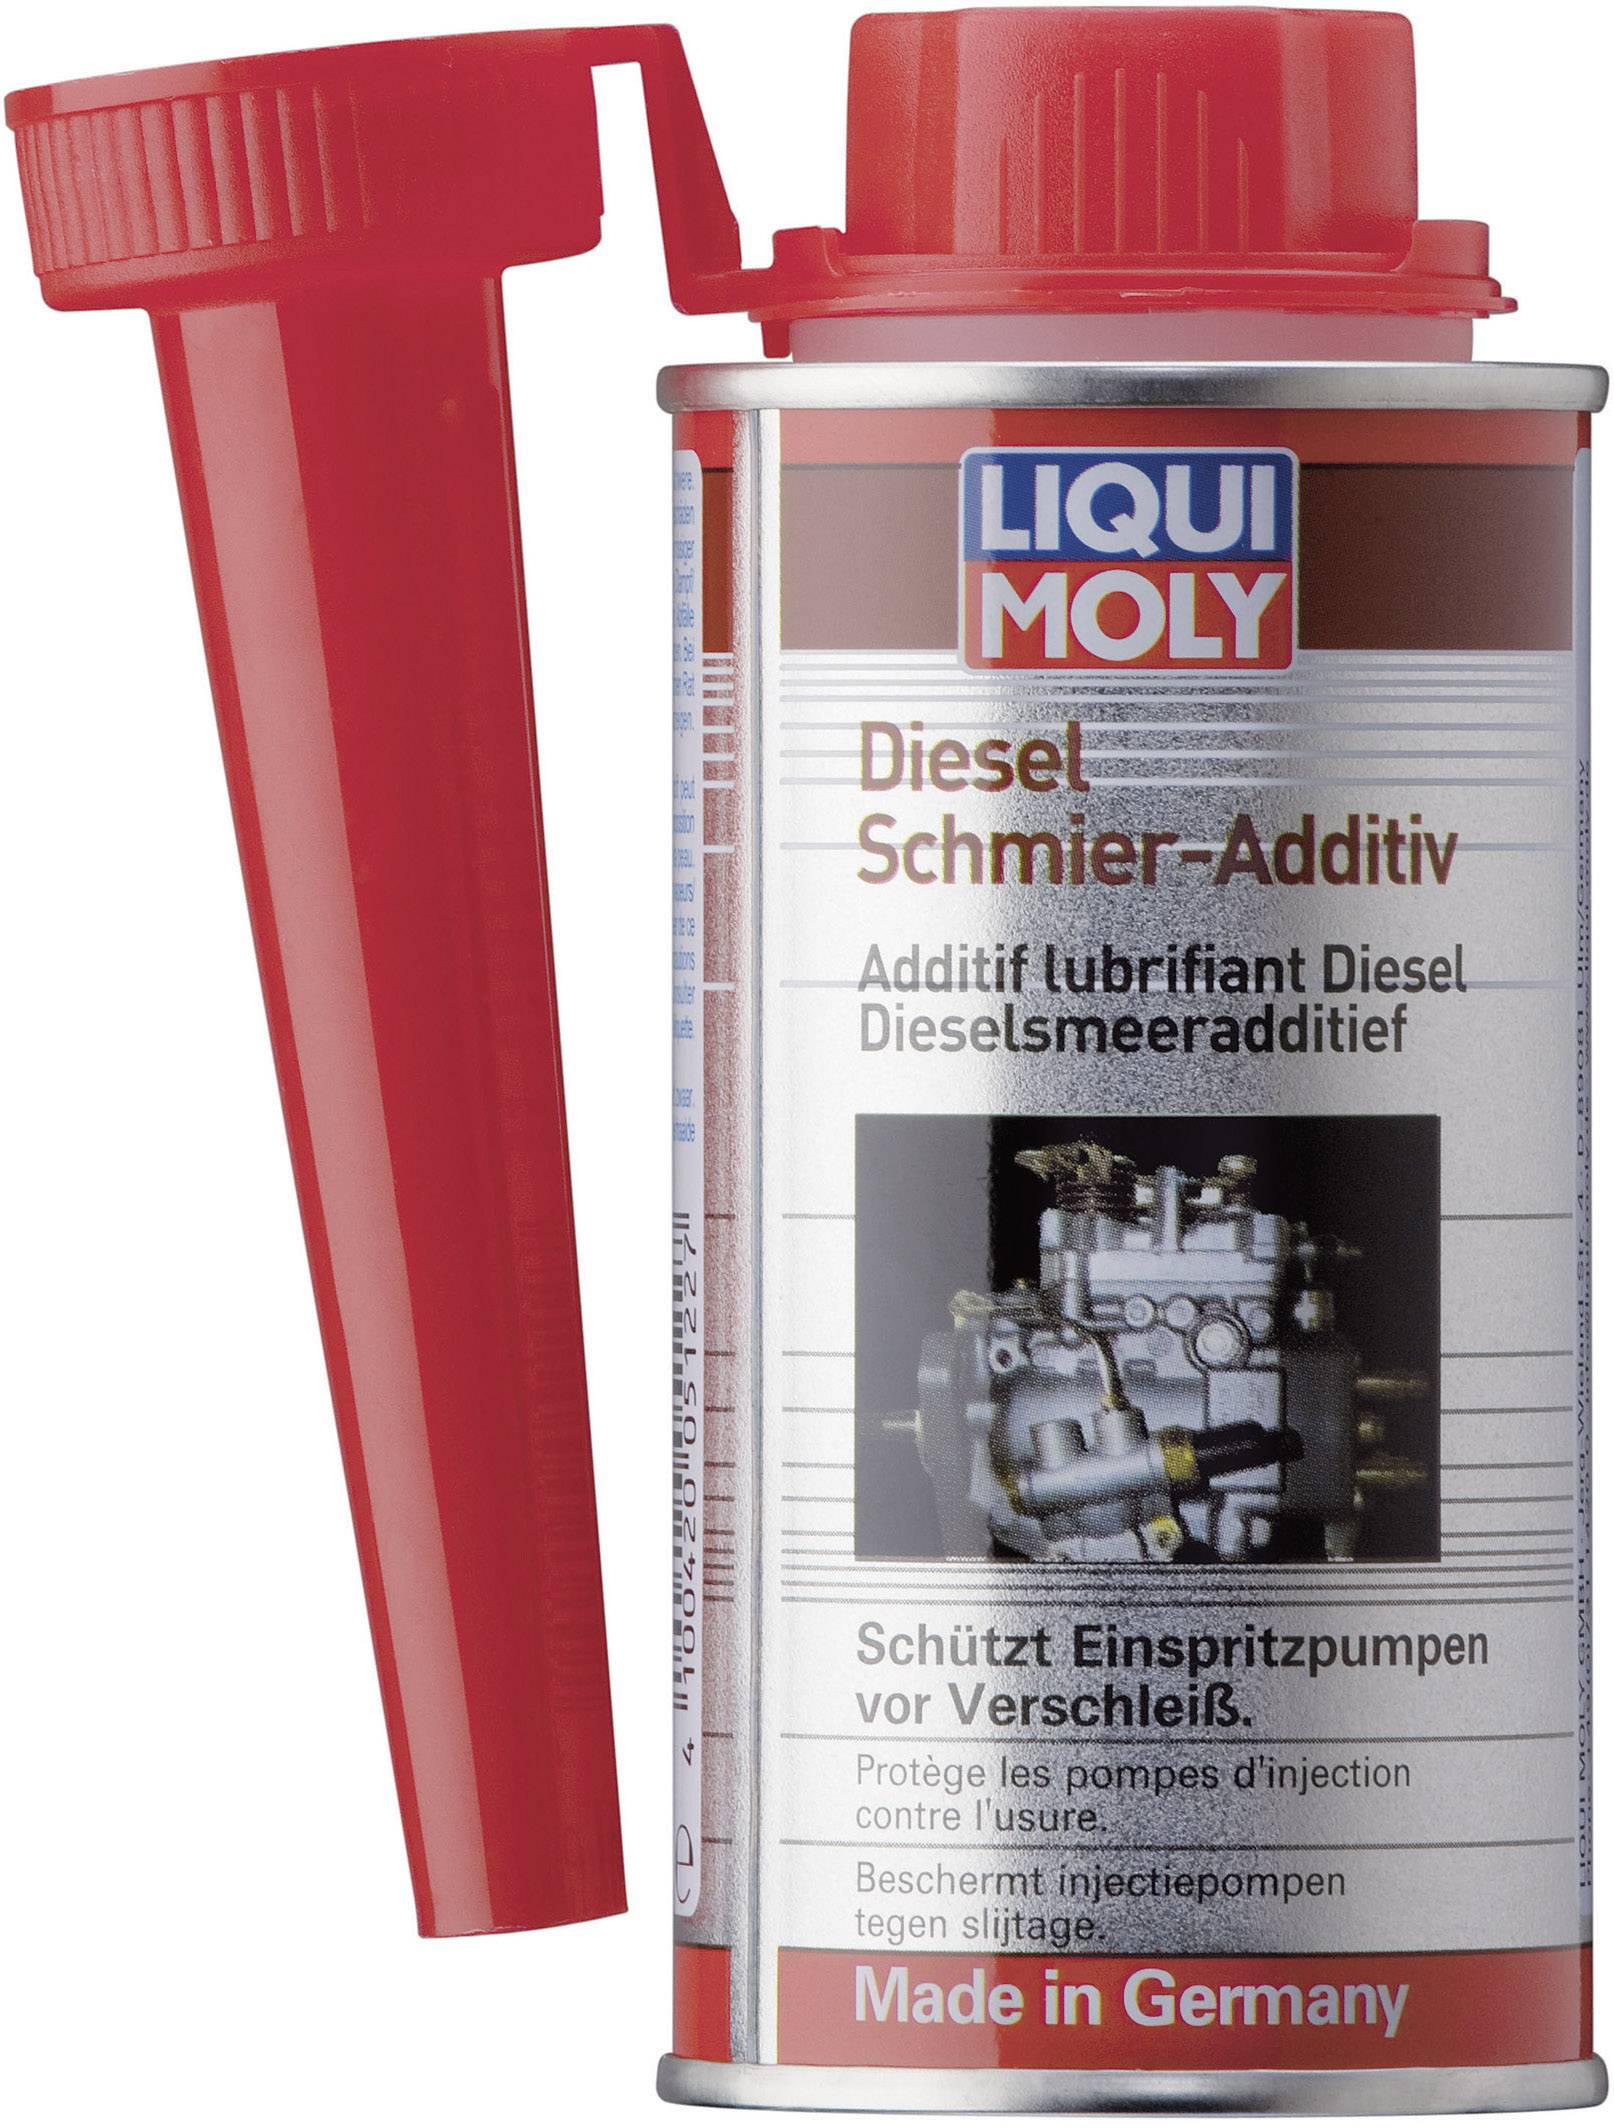 Buy Liqui Moly Diesel lubricant additive 5122 150 ml